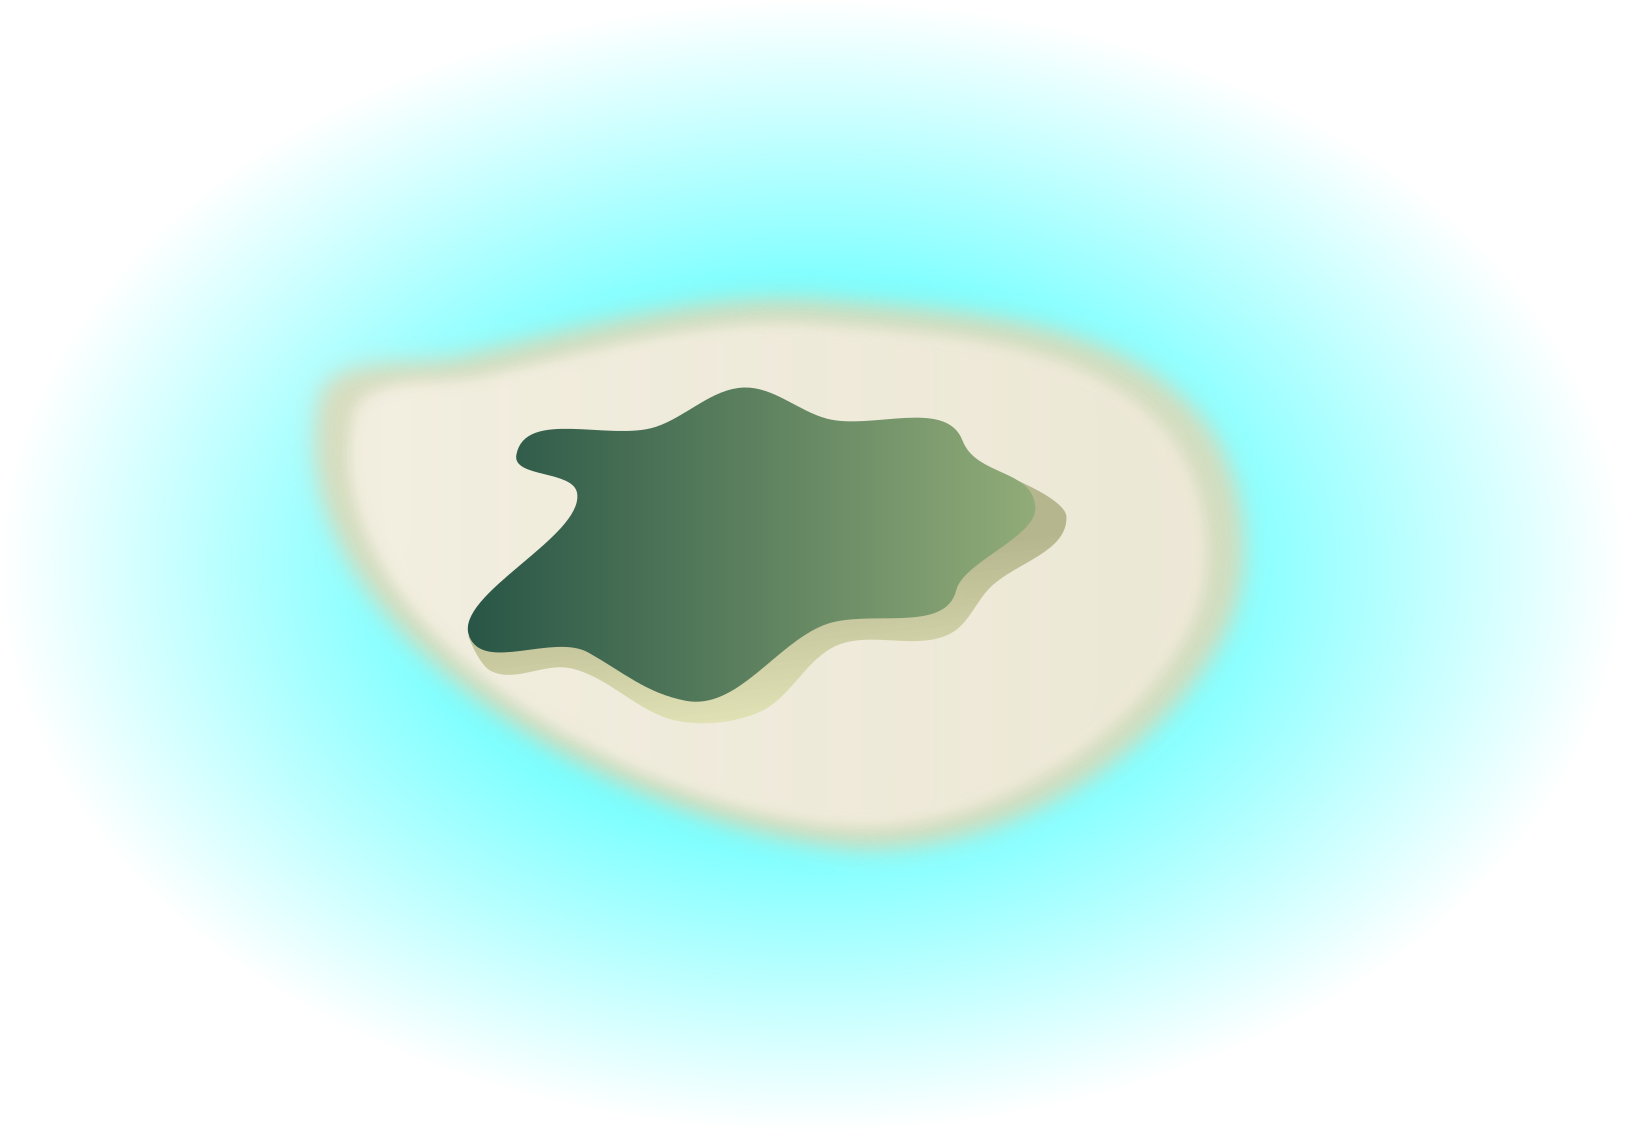 オノゴロ島の画像です。